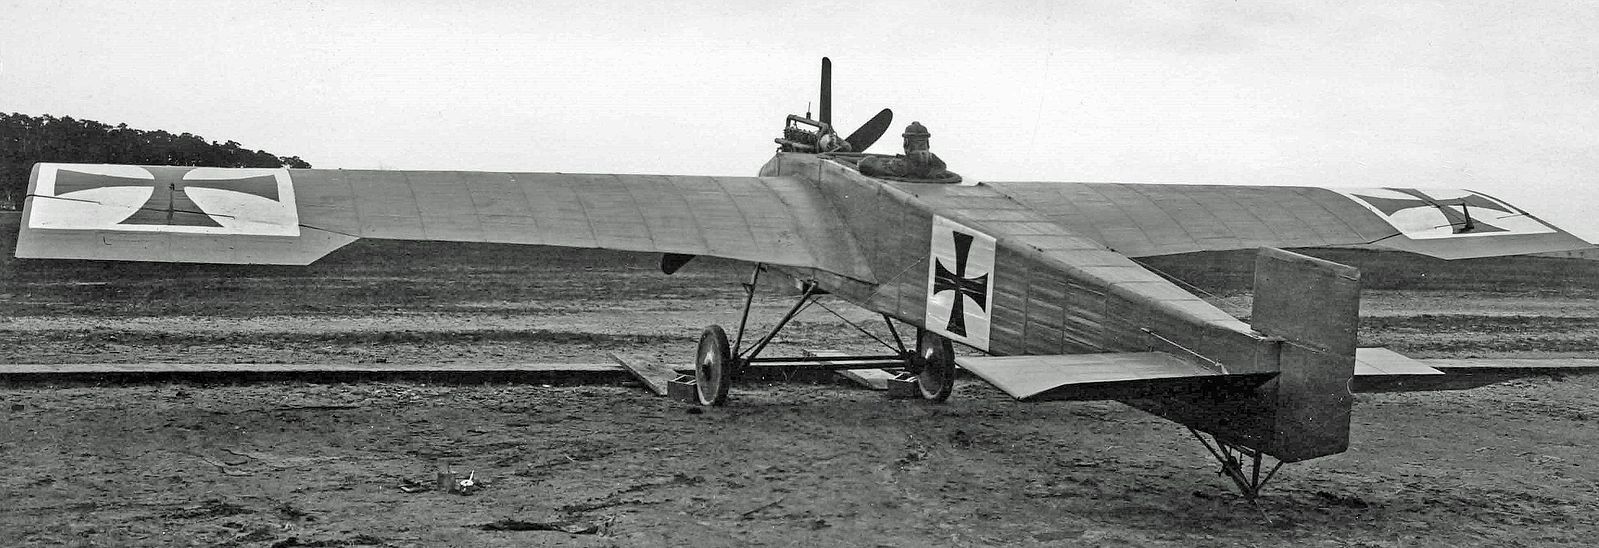 JunkerJ1 from 1915